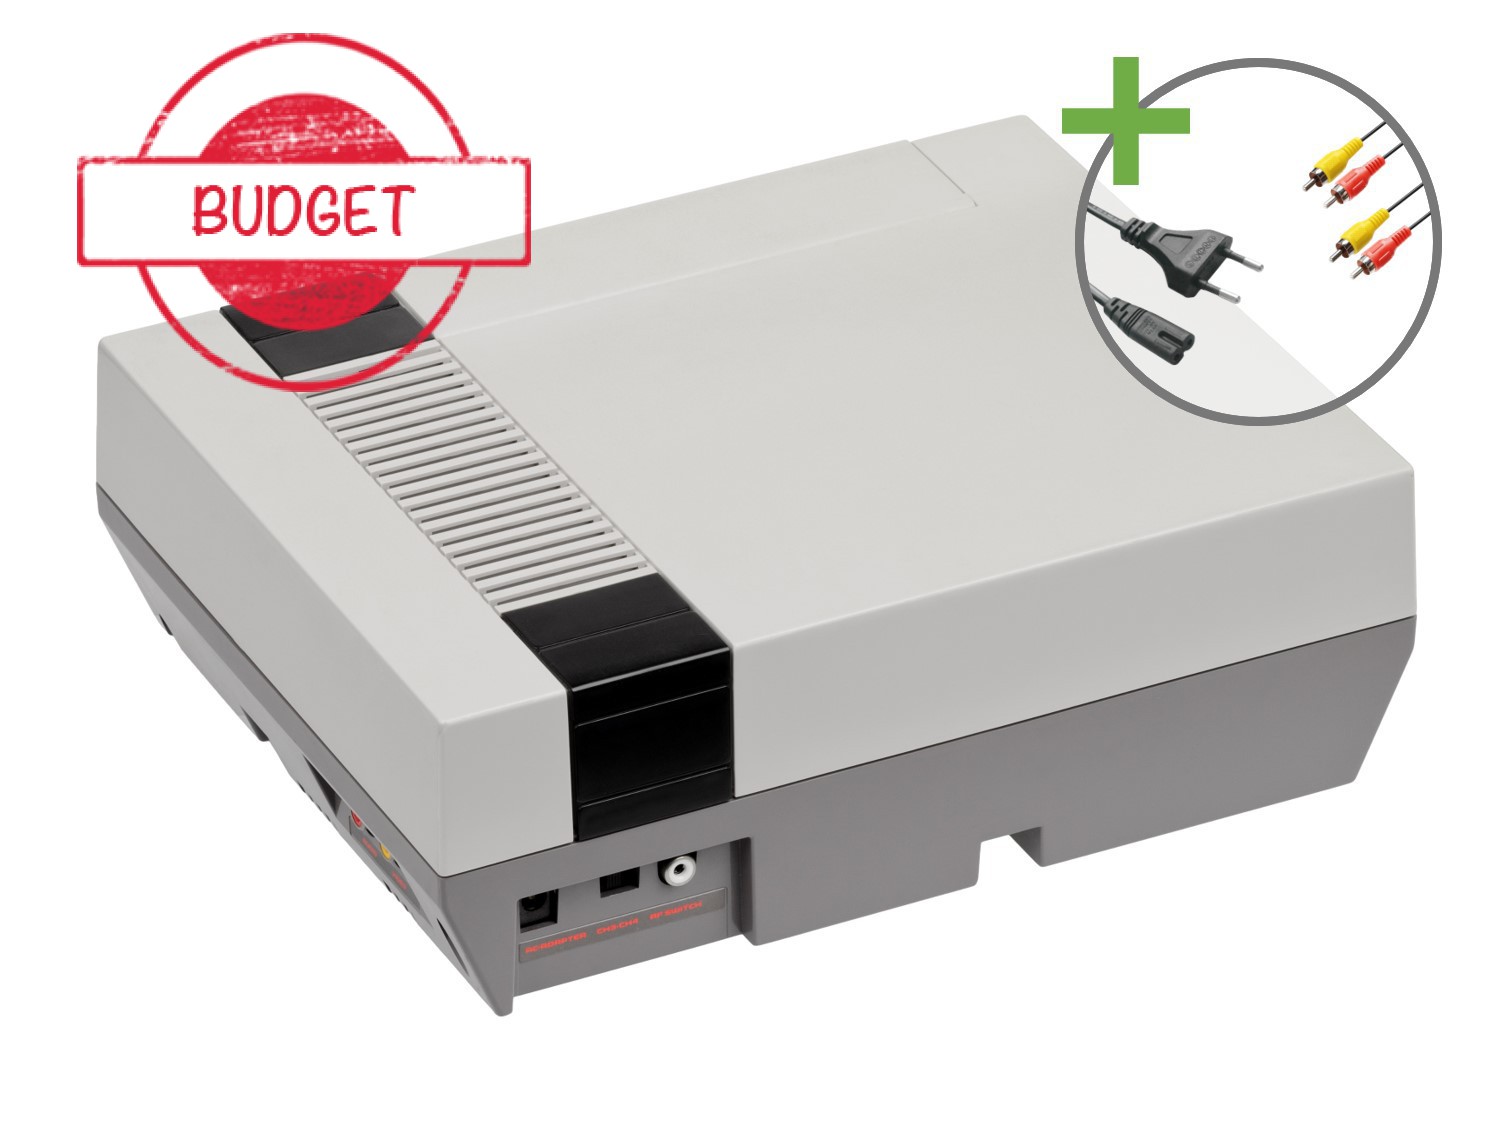 Nintendo NES Starter Pack - Chris's Nostalgic Pack - Budget - Nintendo NES Hardware - 3